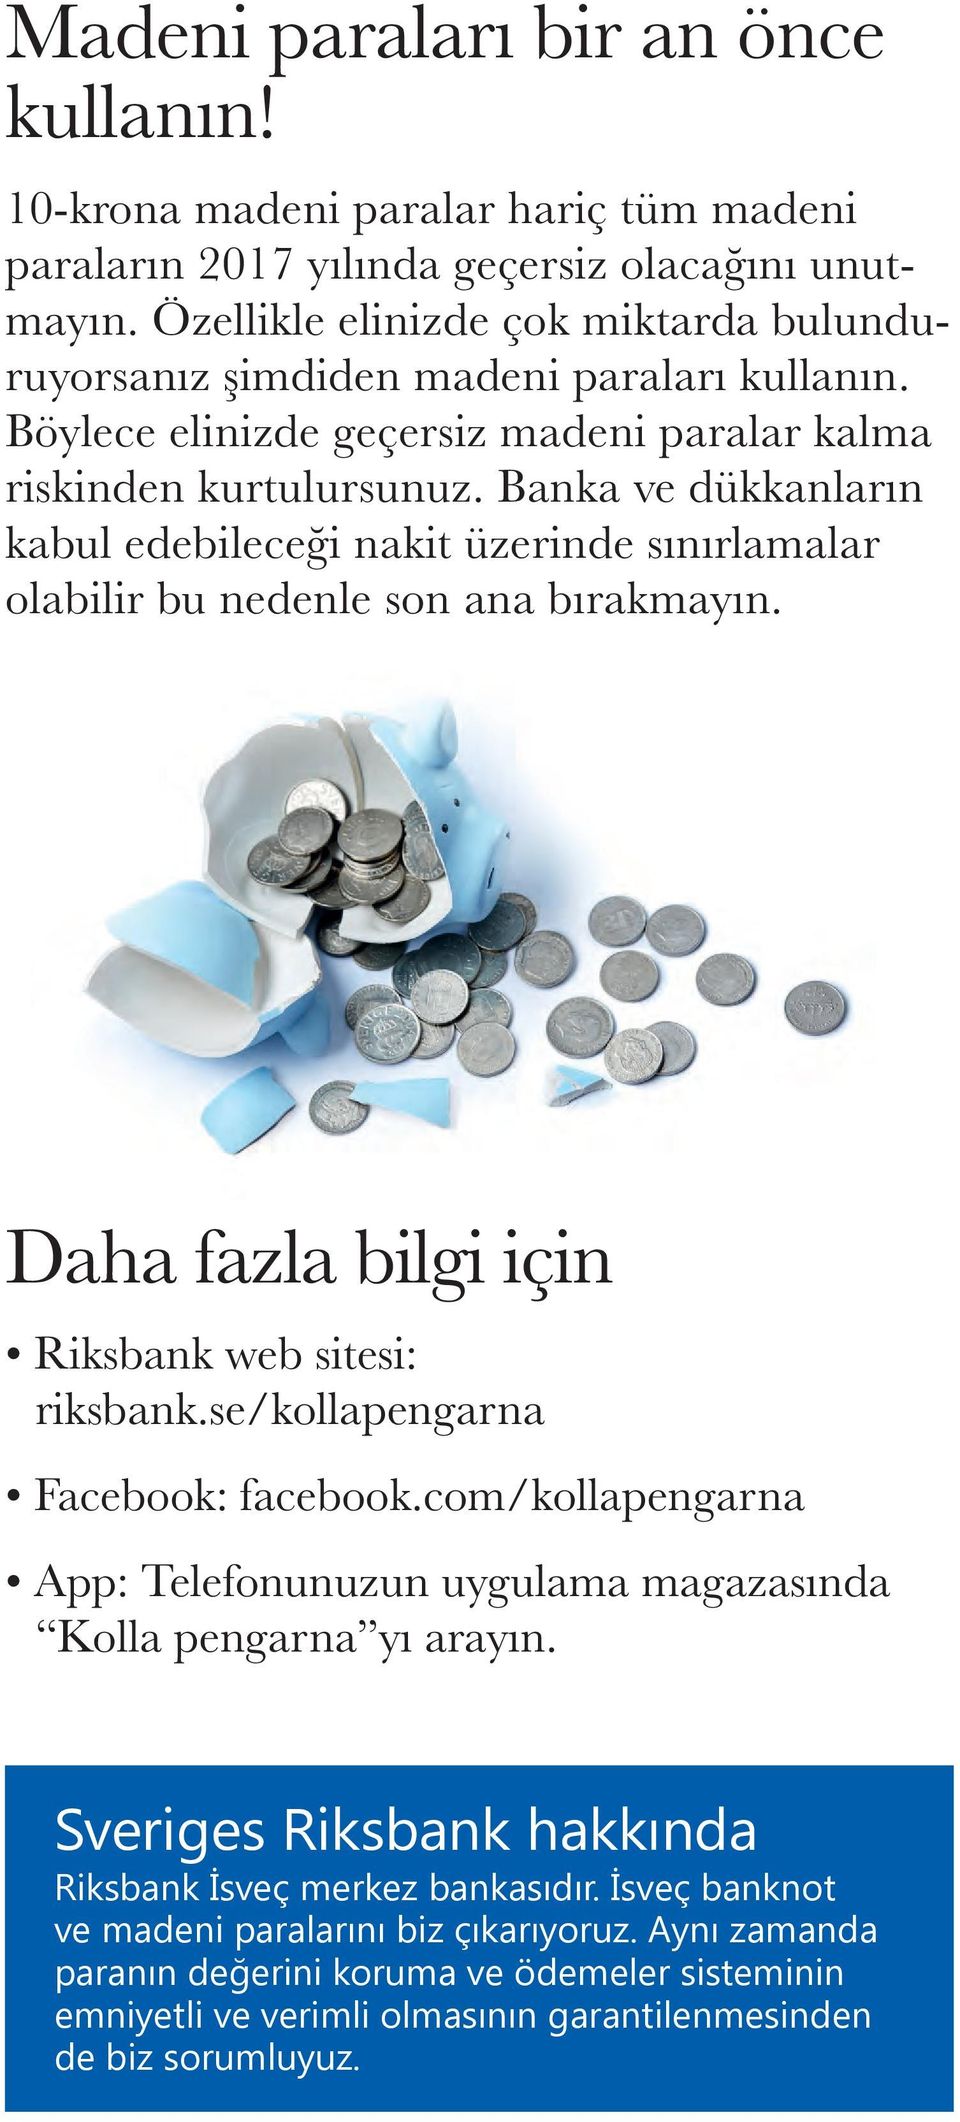 Banka ve dükkanların kabul edebileceği nakit üzerinde sınırlamalar olabilir bu nedenle son ana bırakmayın. Daha fazla bilgi için Riksbank web sitesi: riksbank.se/kollapengarna Facebook: facebook.